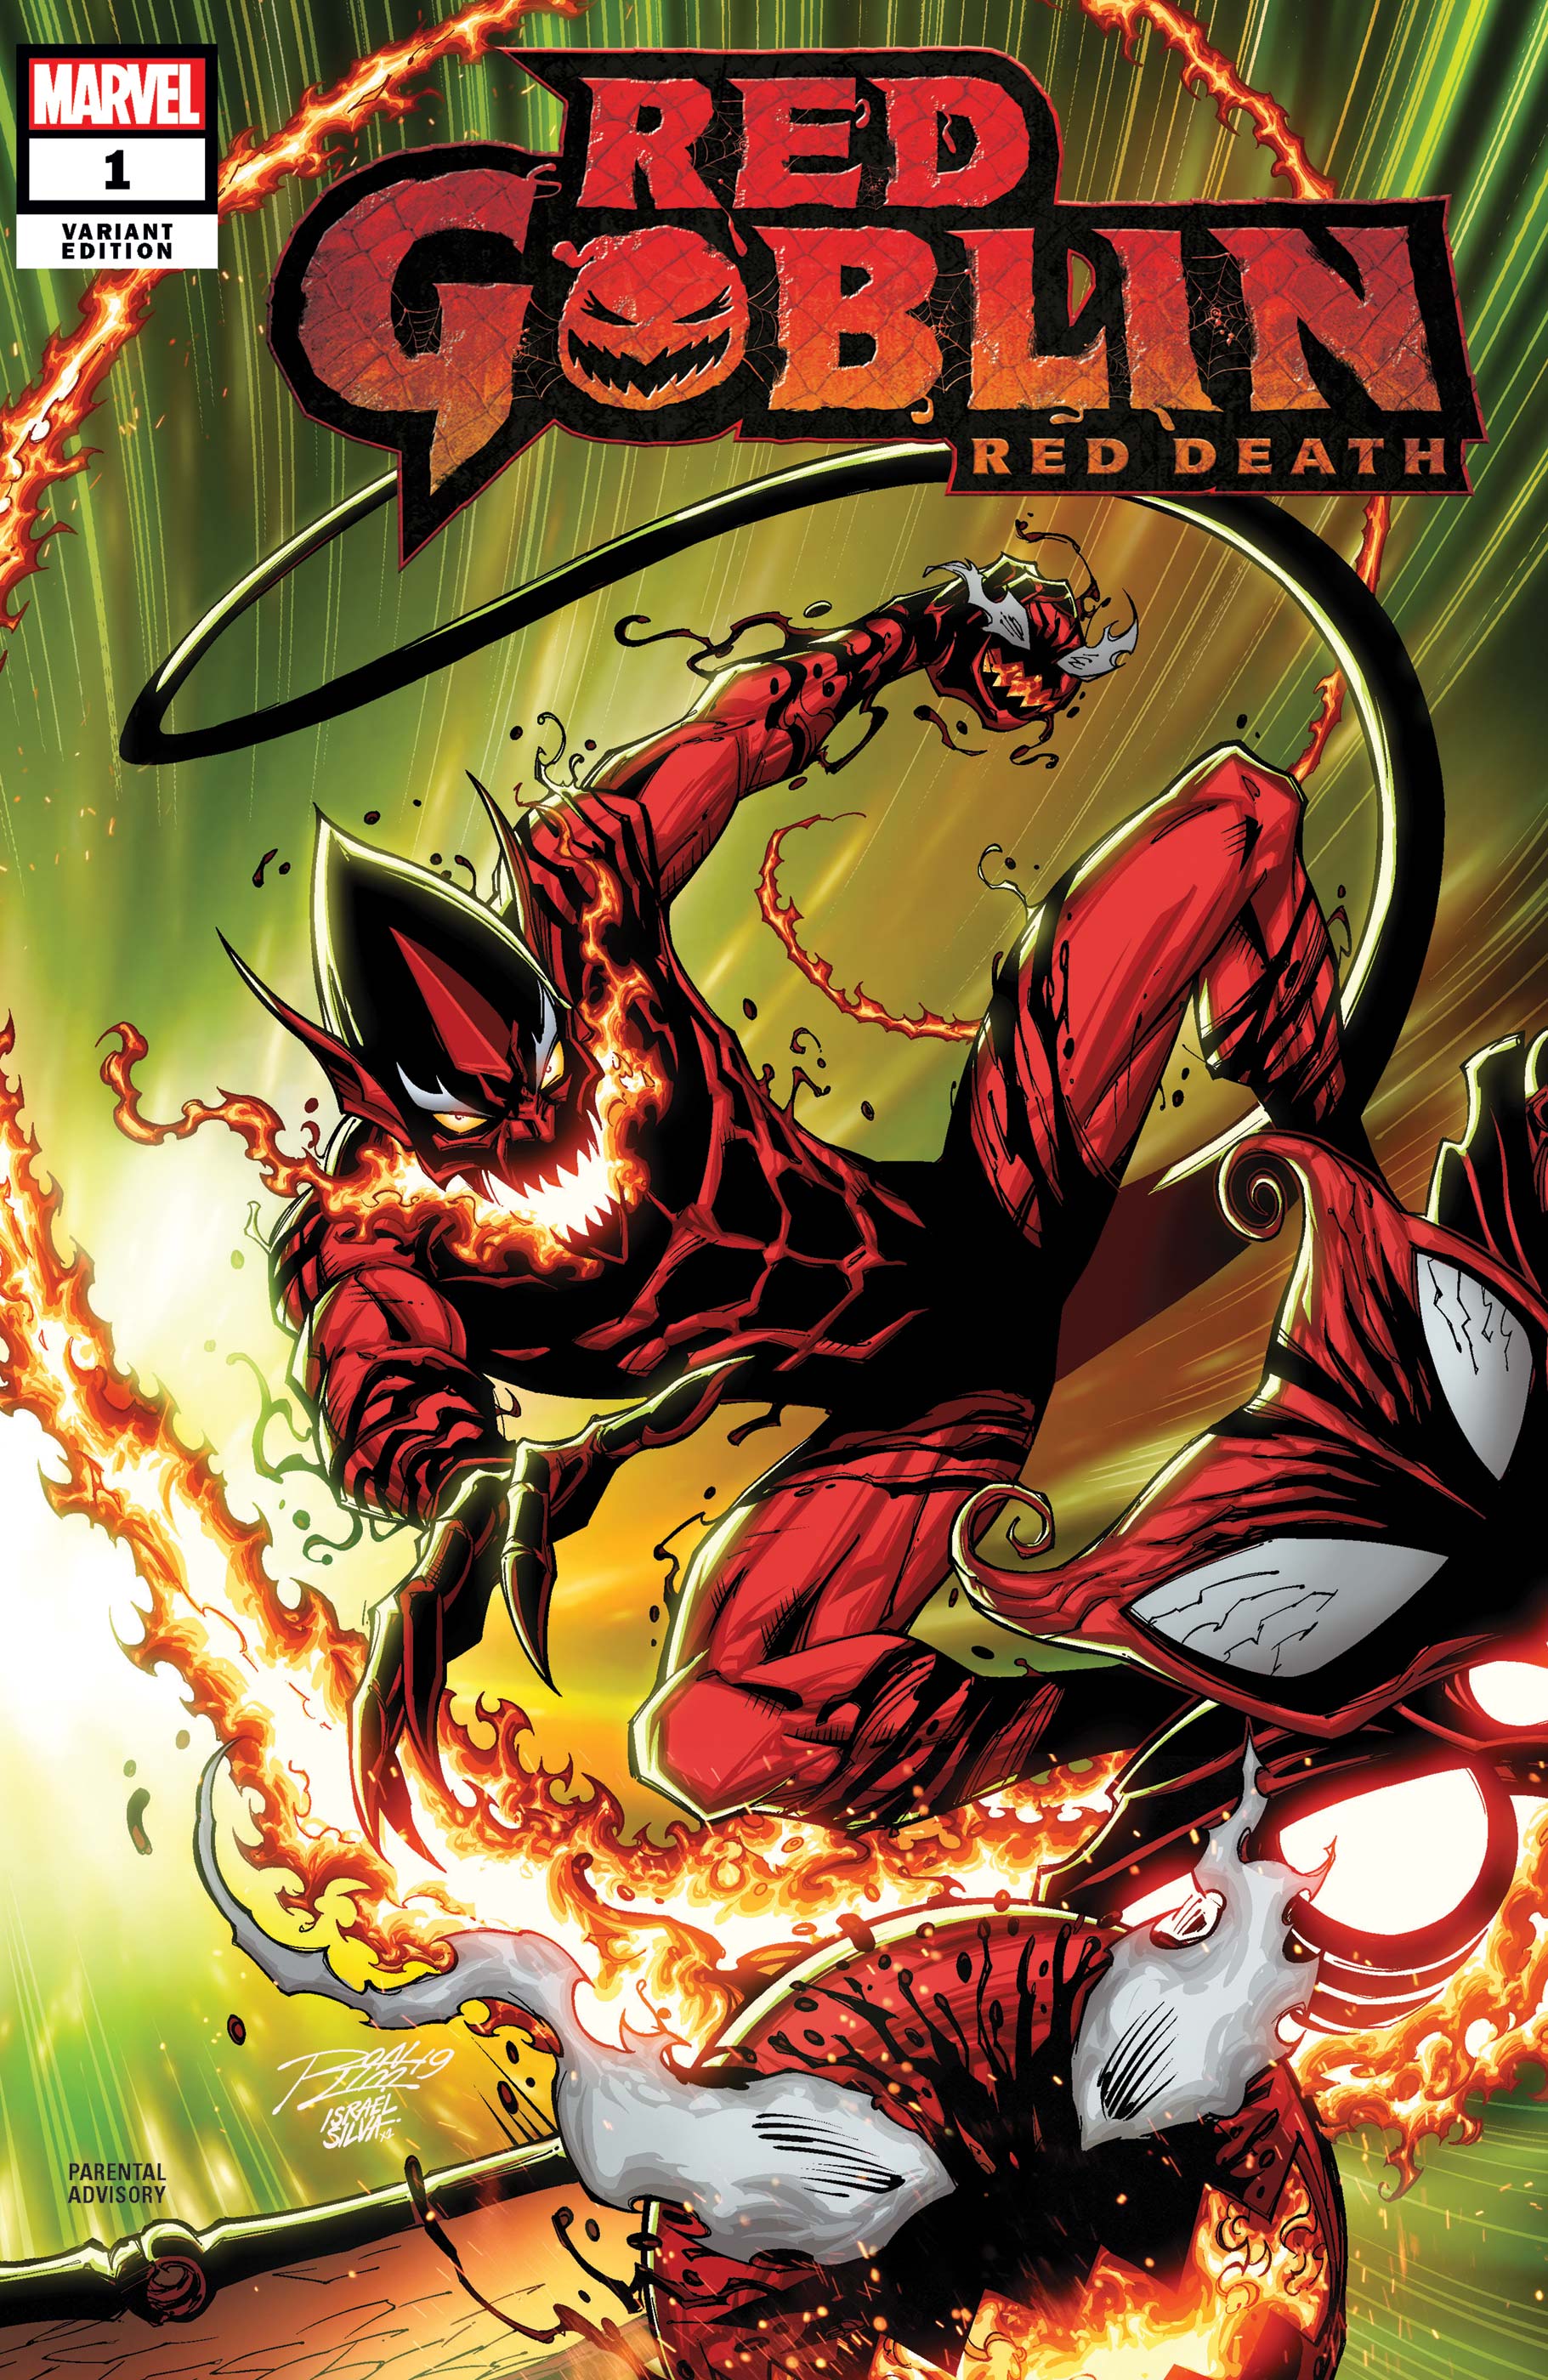 Red Goblin: Red Death Vol 1 1 | Marvel Database | Fandom